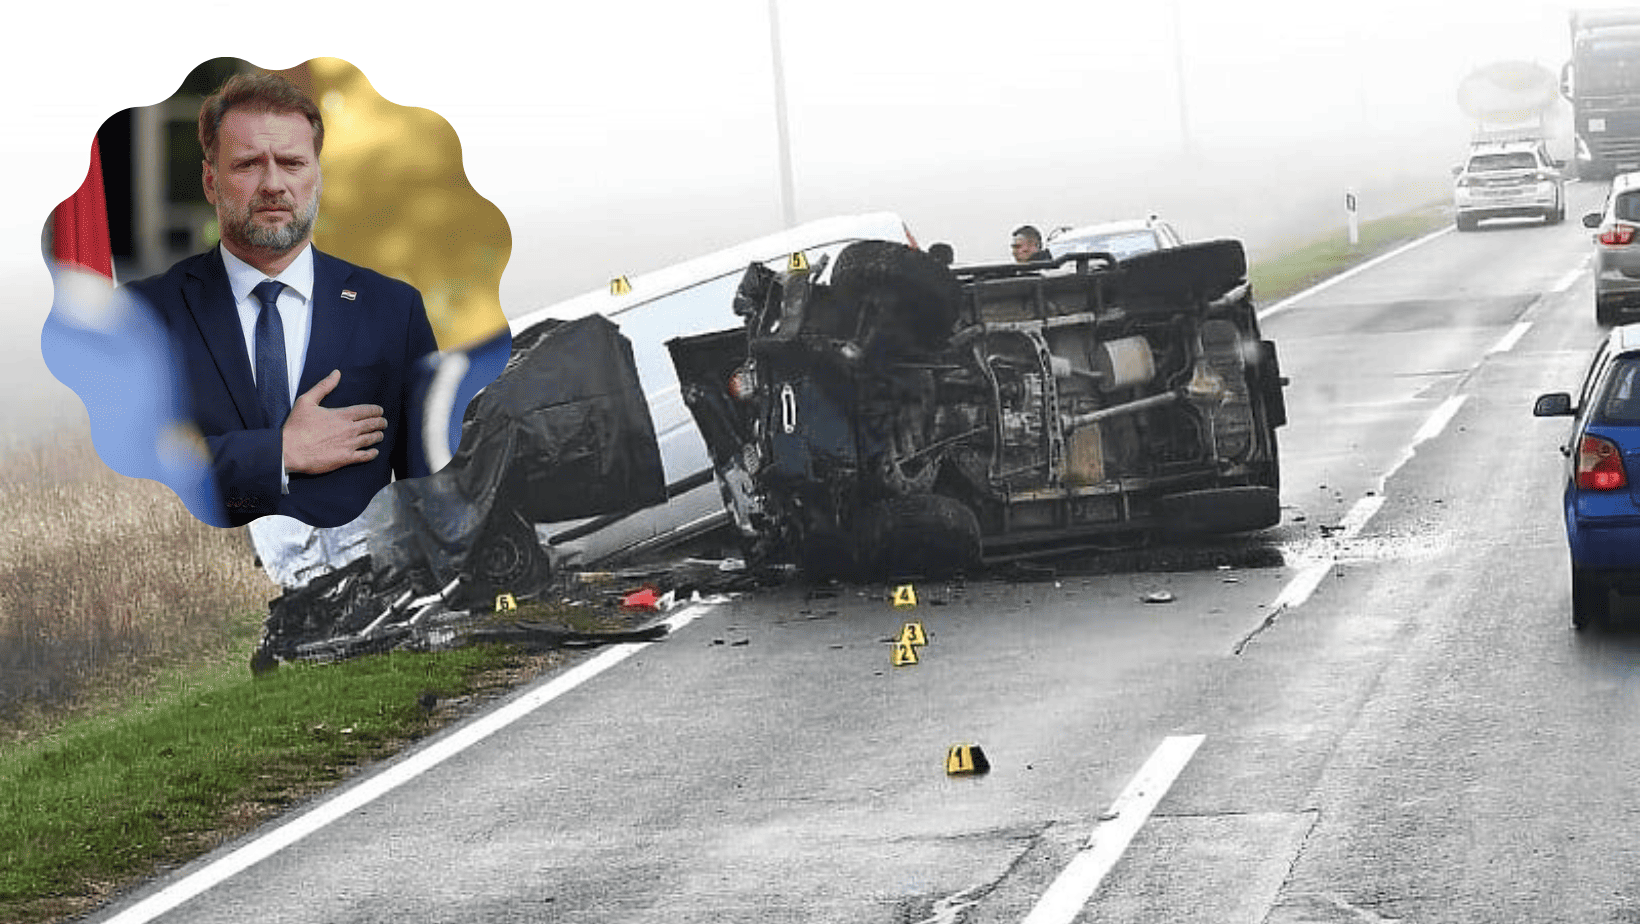 Hrvatski ministar odbrane učestvovao u teškoj saobraćajnoj nesreći u kojoj ima poginulih